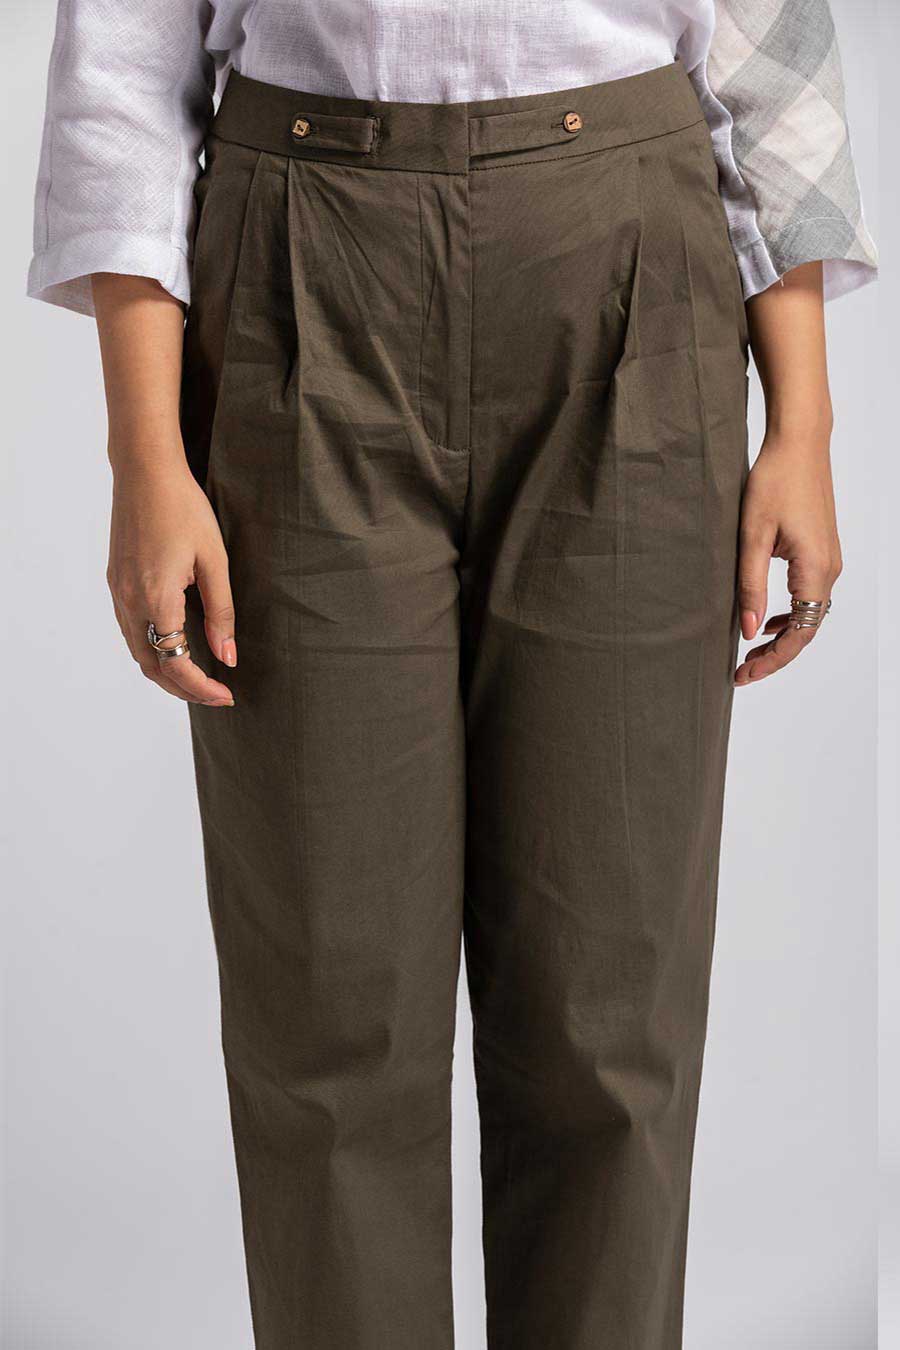 Abienue Olive Cotton Lycra Pants